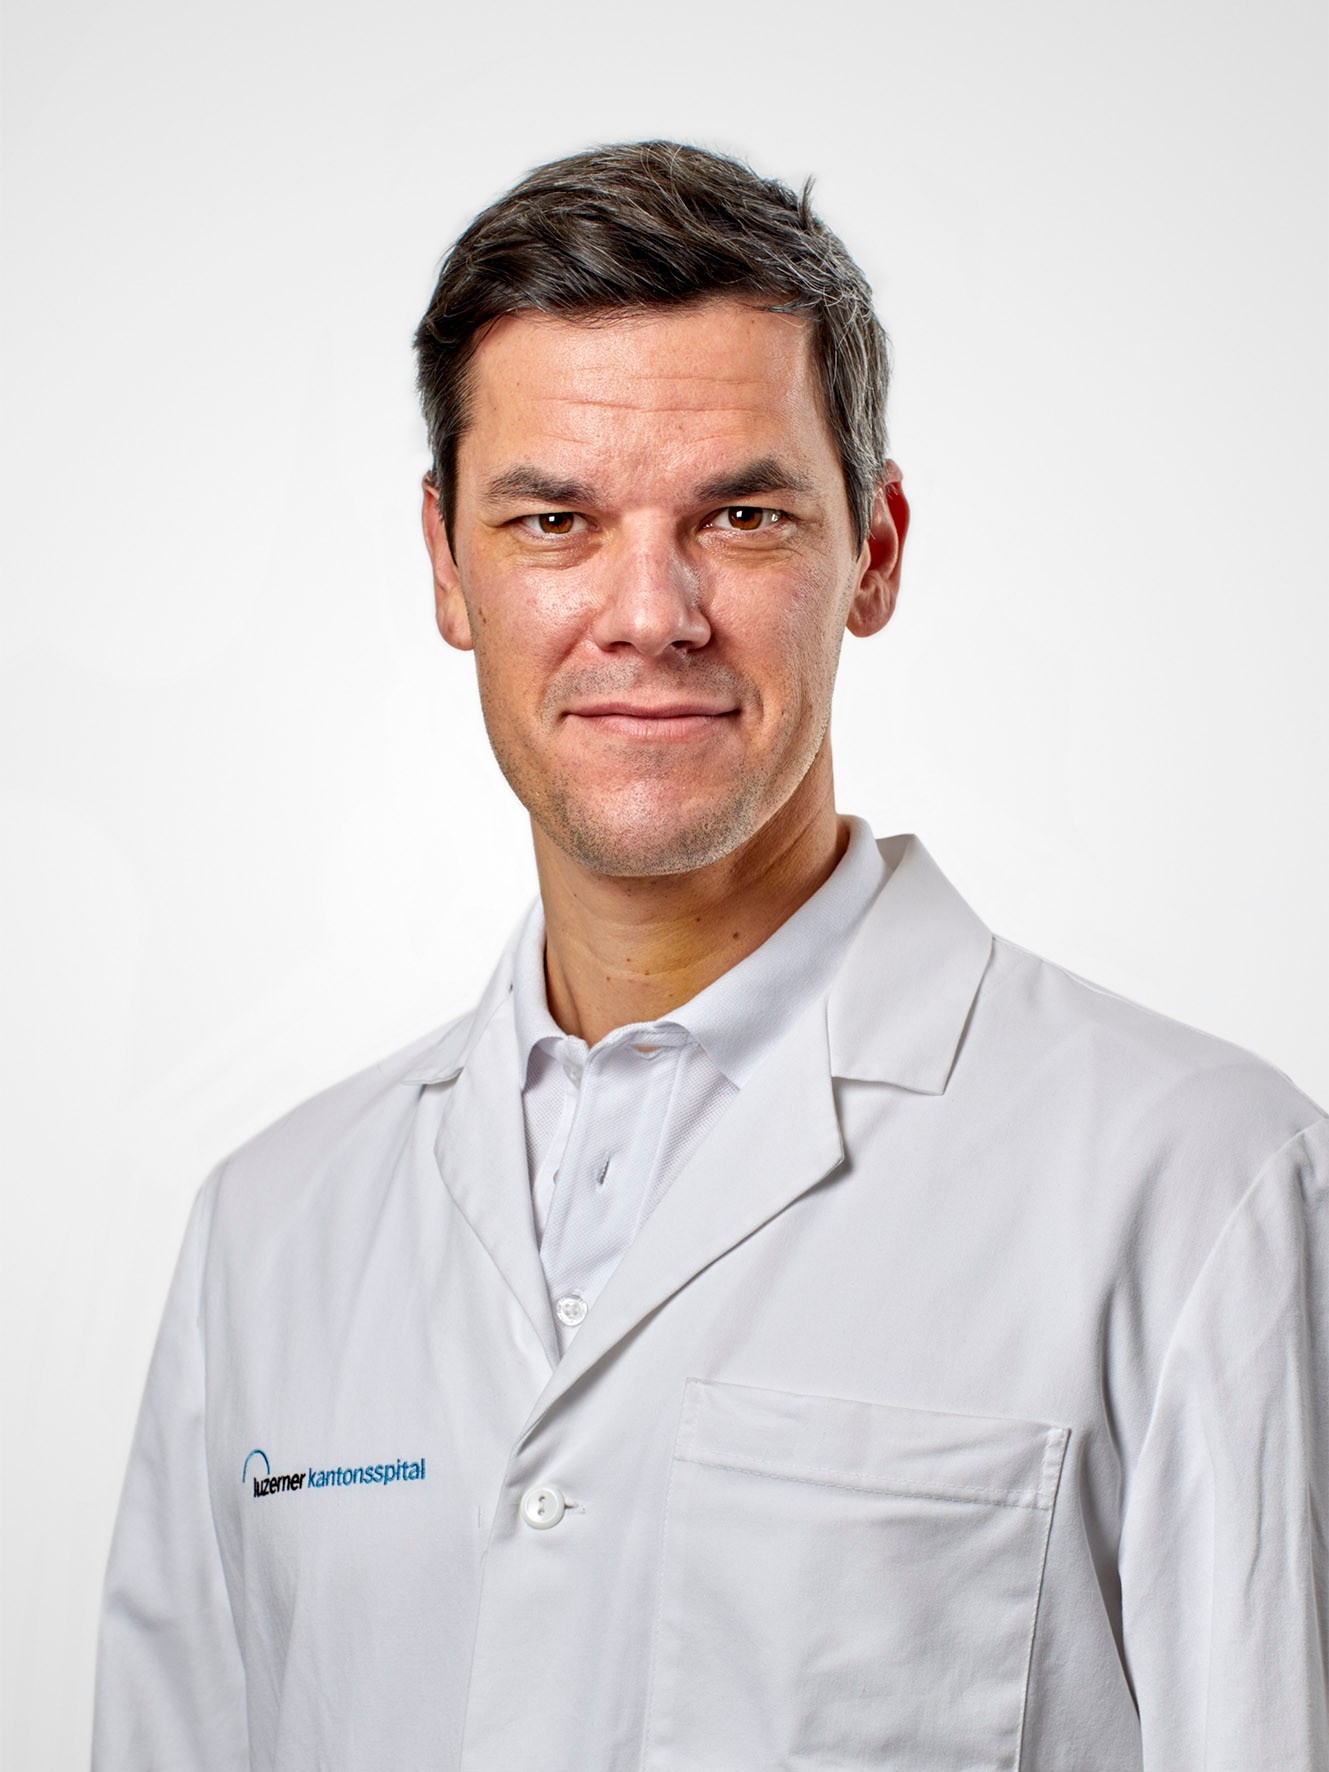 Björn-Christian Link, Dr méd. et privat-docent, est médecin-chef et directeur de la clinique d’orthopédie et de traumatologie de l’Hôpital cantonal de Lucerne (LUKS)